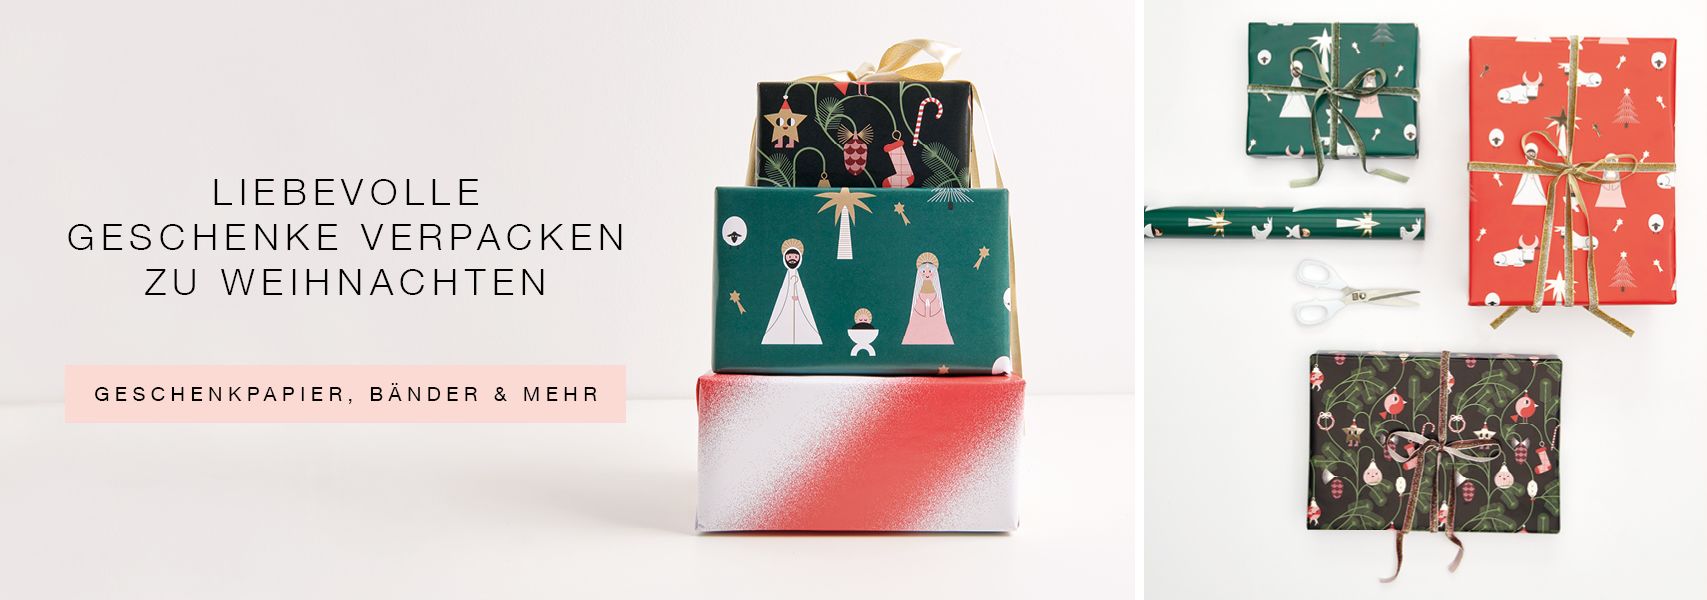 https://www.rico-design.com/anlaesse/weihnachten/geschenke-verpacken/